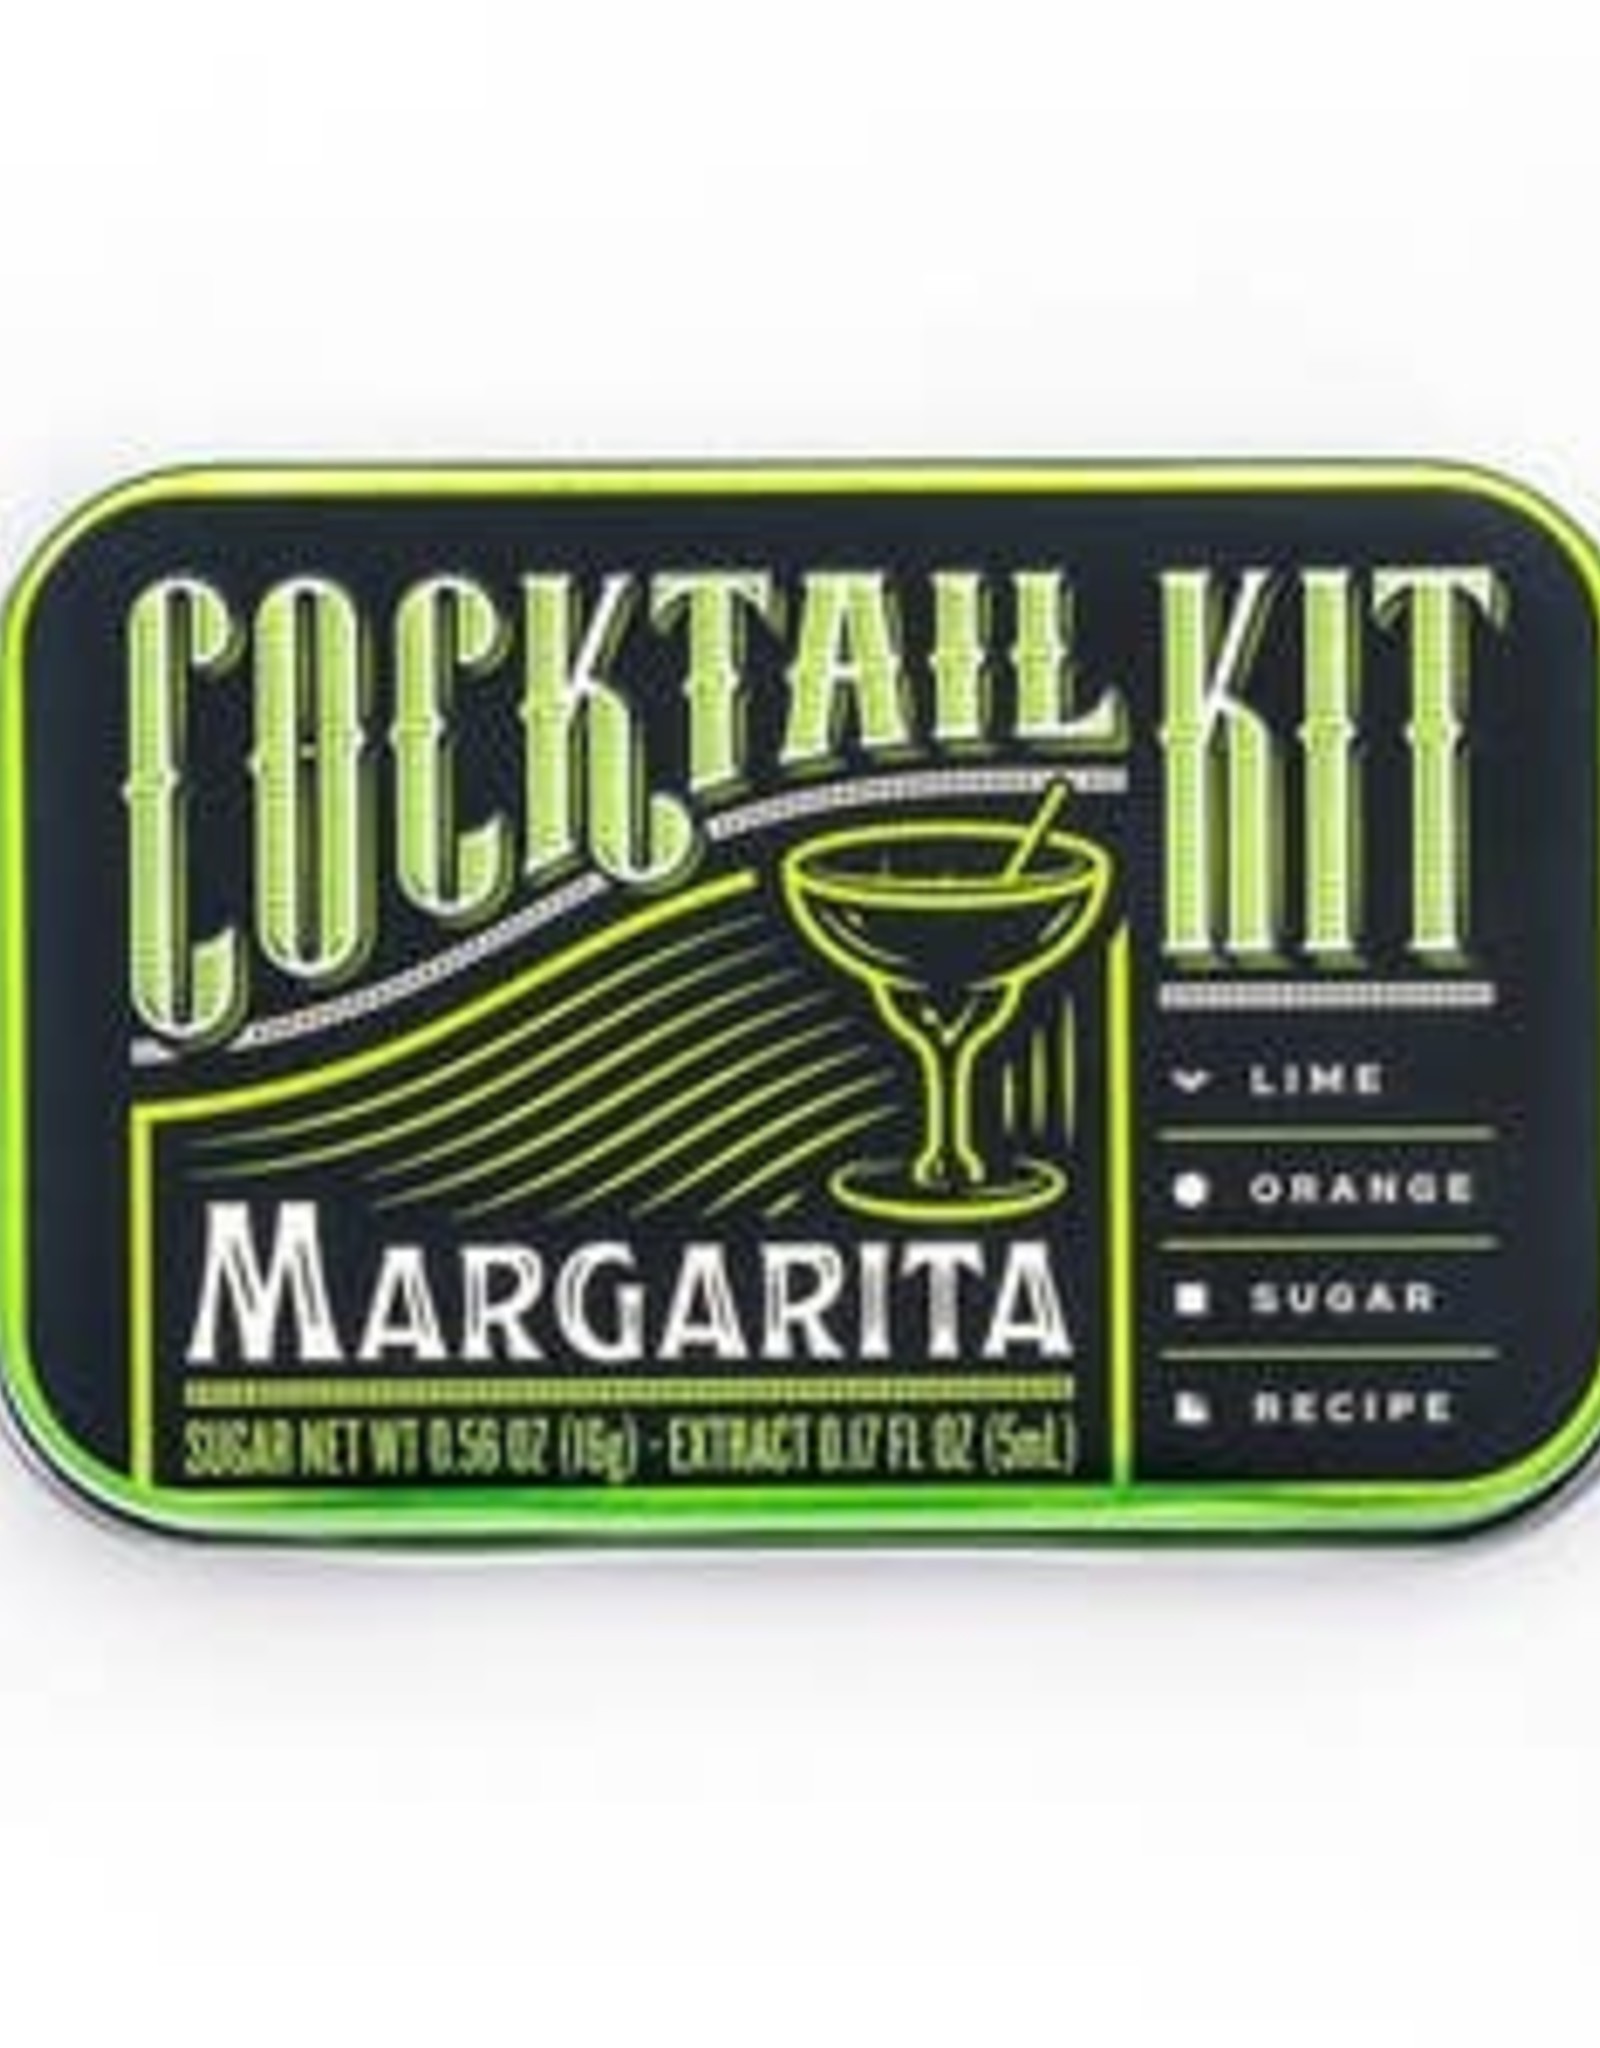 Cocktail Kit Margarita